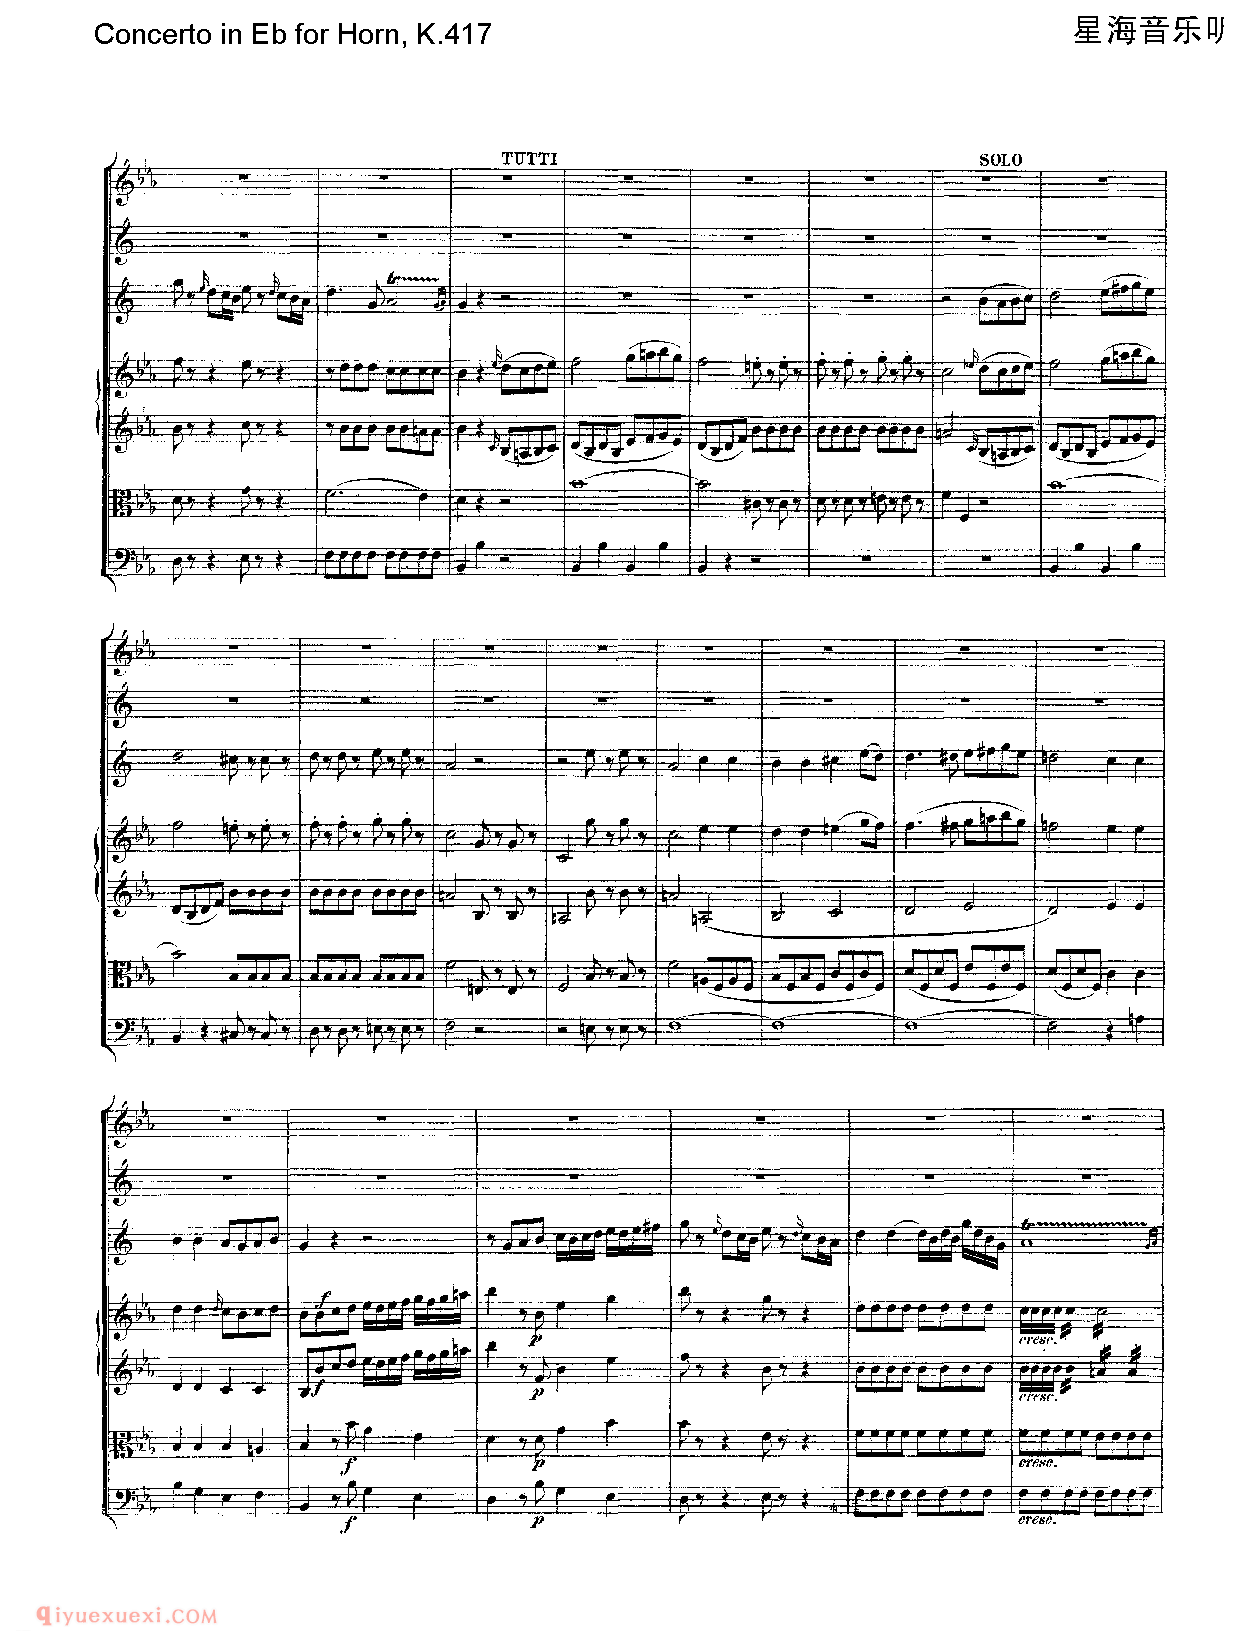 莫扎特  Concerto in Eb for Horn, K.417/降E大调第二圆号协奏曲 作品号K417